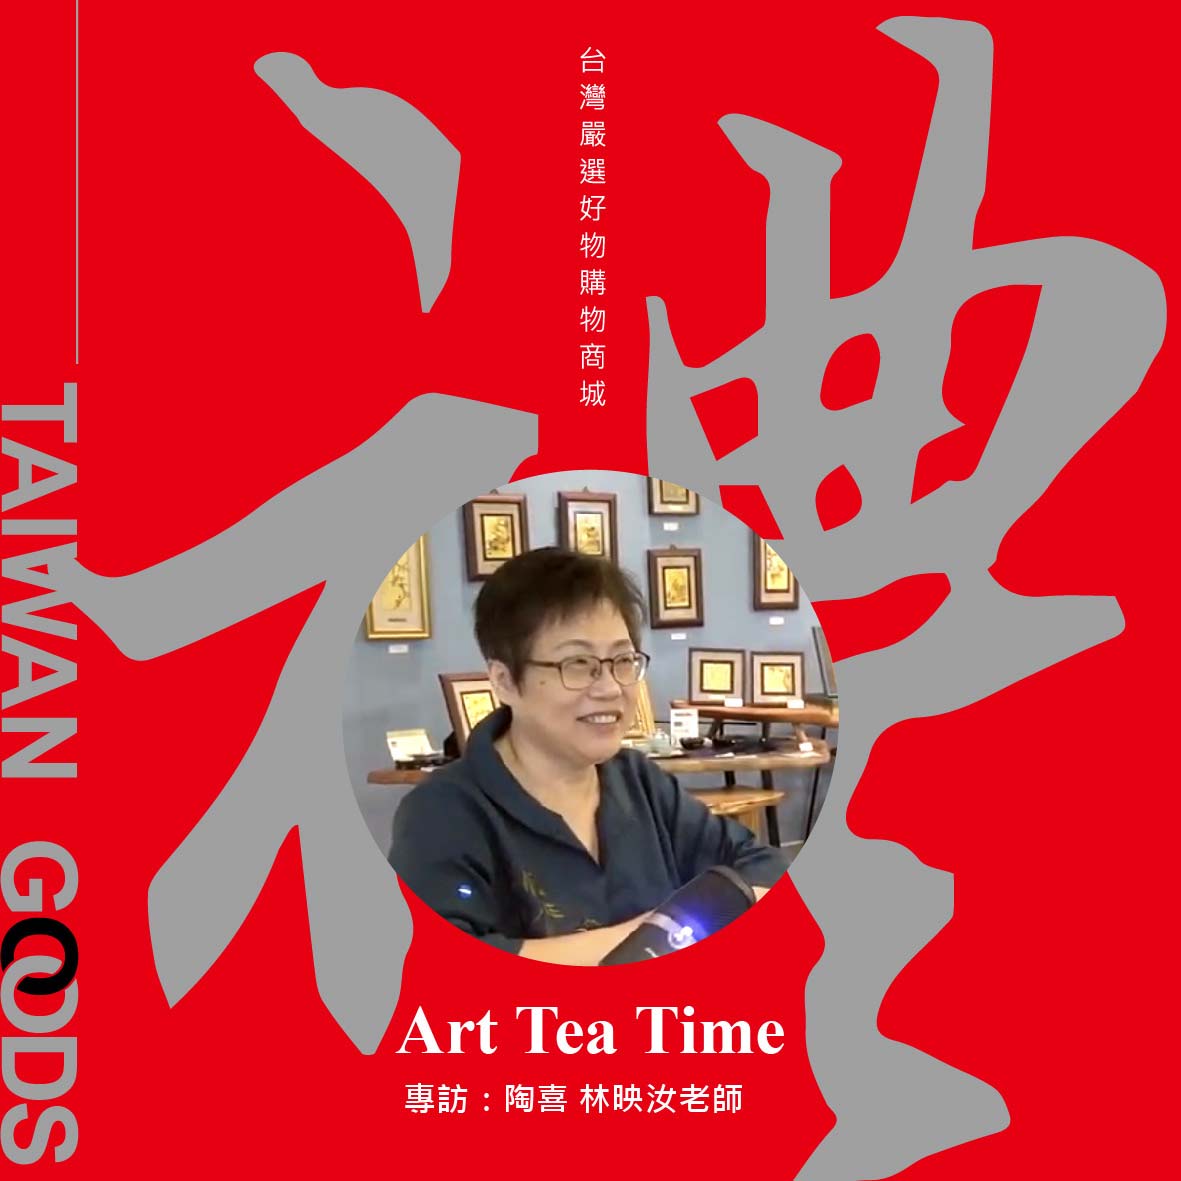 「Art Tea Time單元」台灣禮品館－陶喜工作坊，訪談林映汝老師： 從花藝到陶藝、分享柴燒與木葉天目的創作歴程